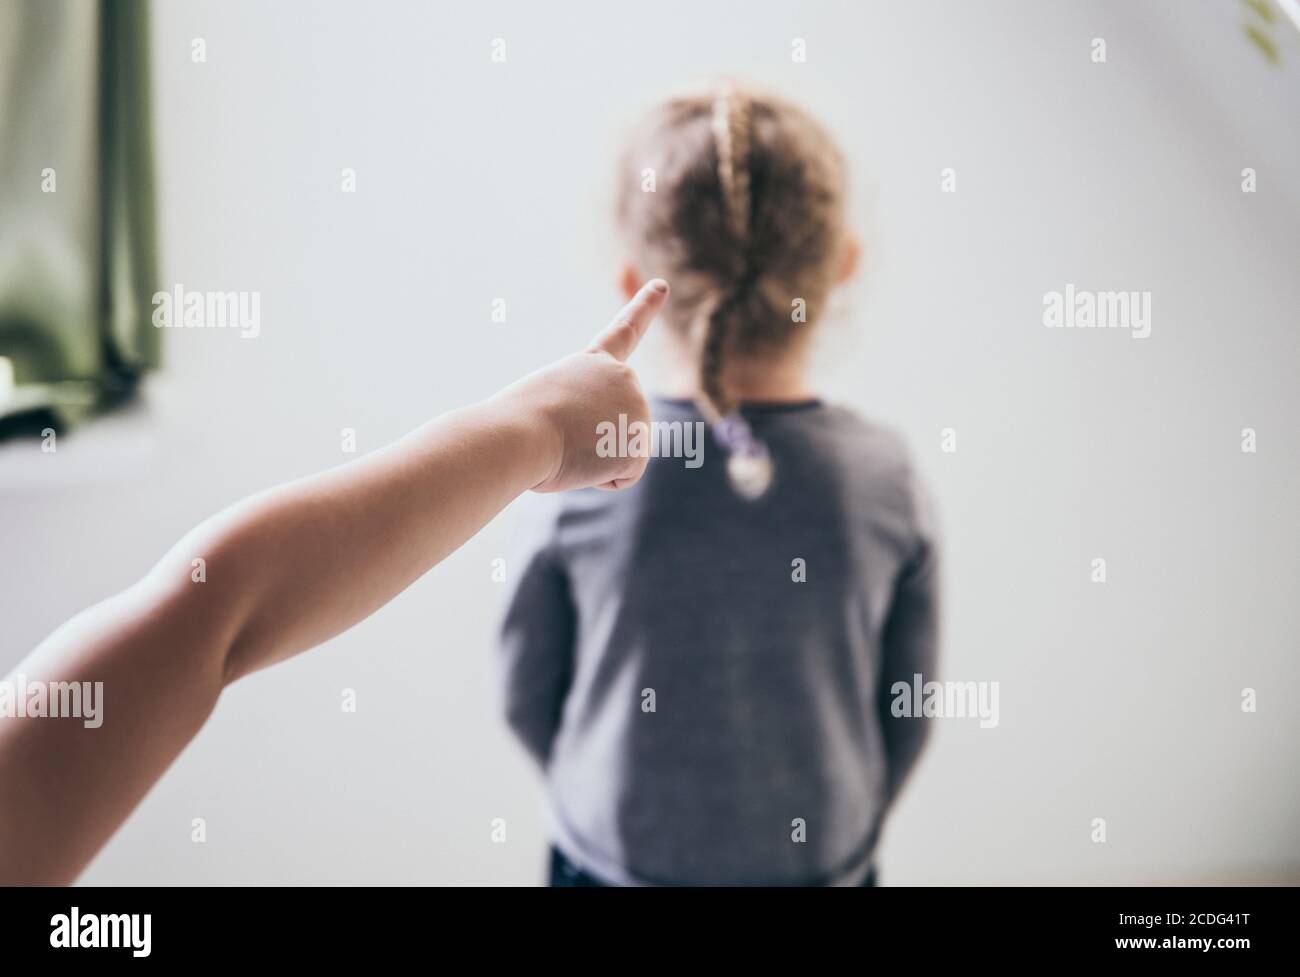 El niño intimamente apuntando con el dedo a la víctima borrosa irreconocible y hablando detrás de la espalda. Concepto de intimidación. Foto de stock